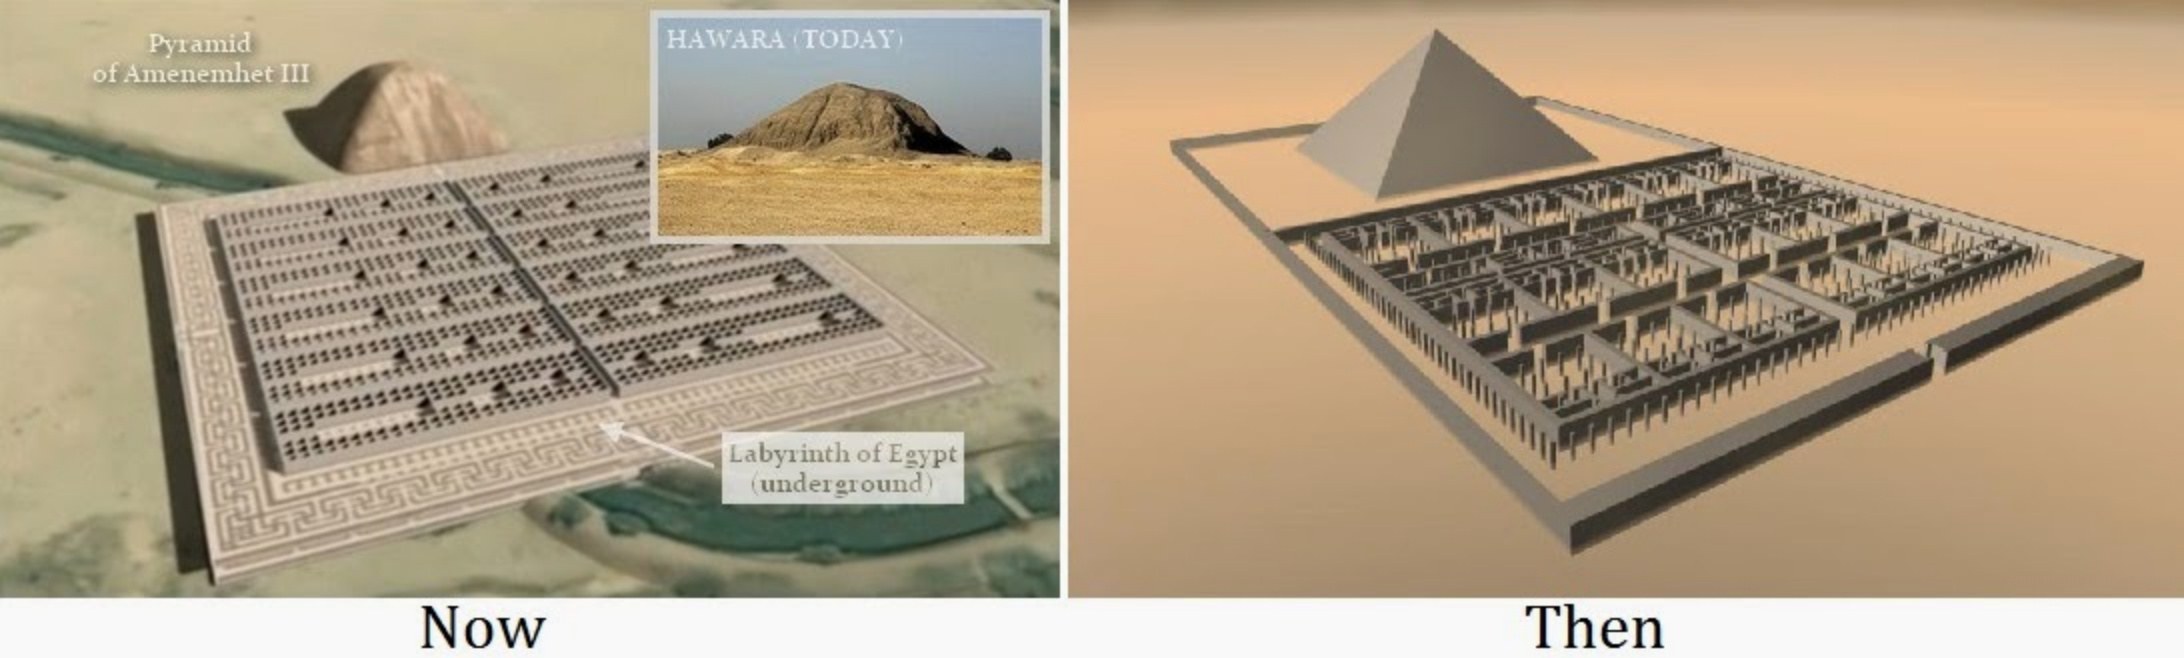 Egyptisch labyrint